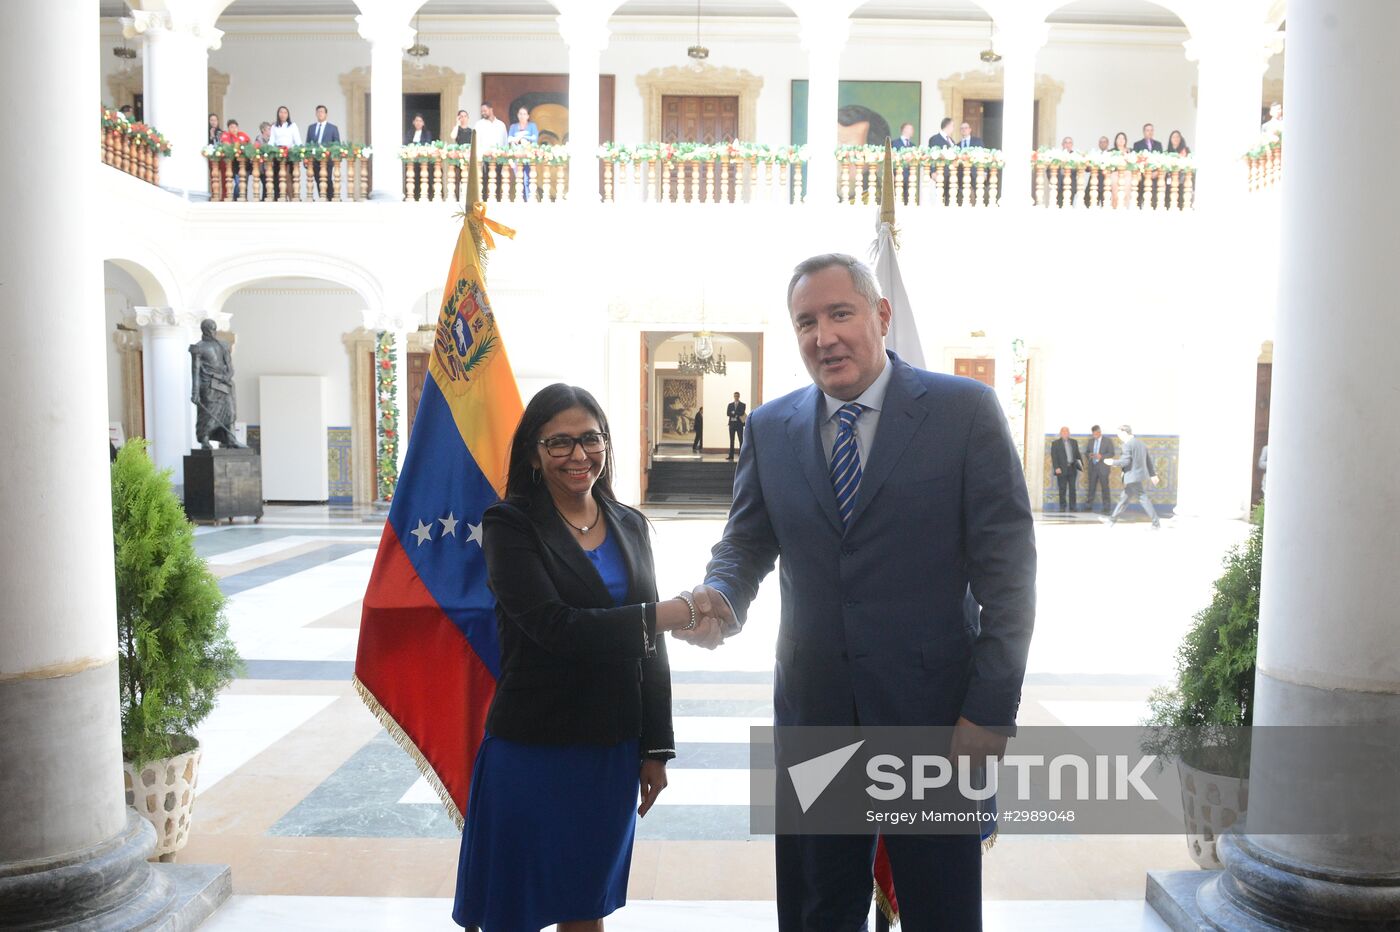 Deputy Prime Minister Dmitry Rogozin's visit to Venezuela